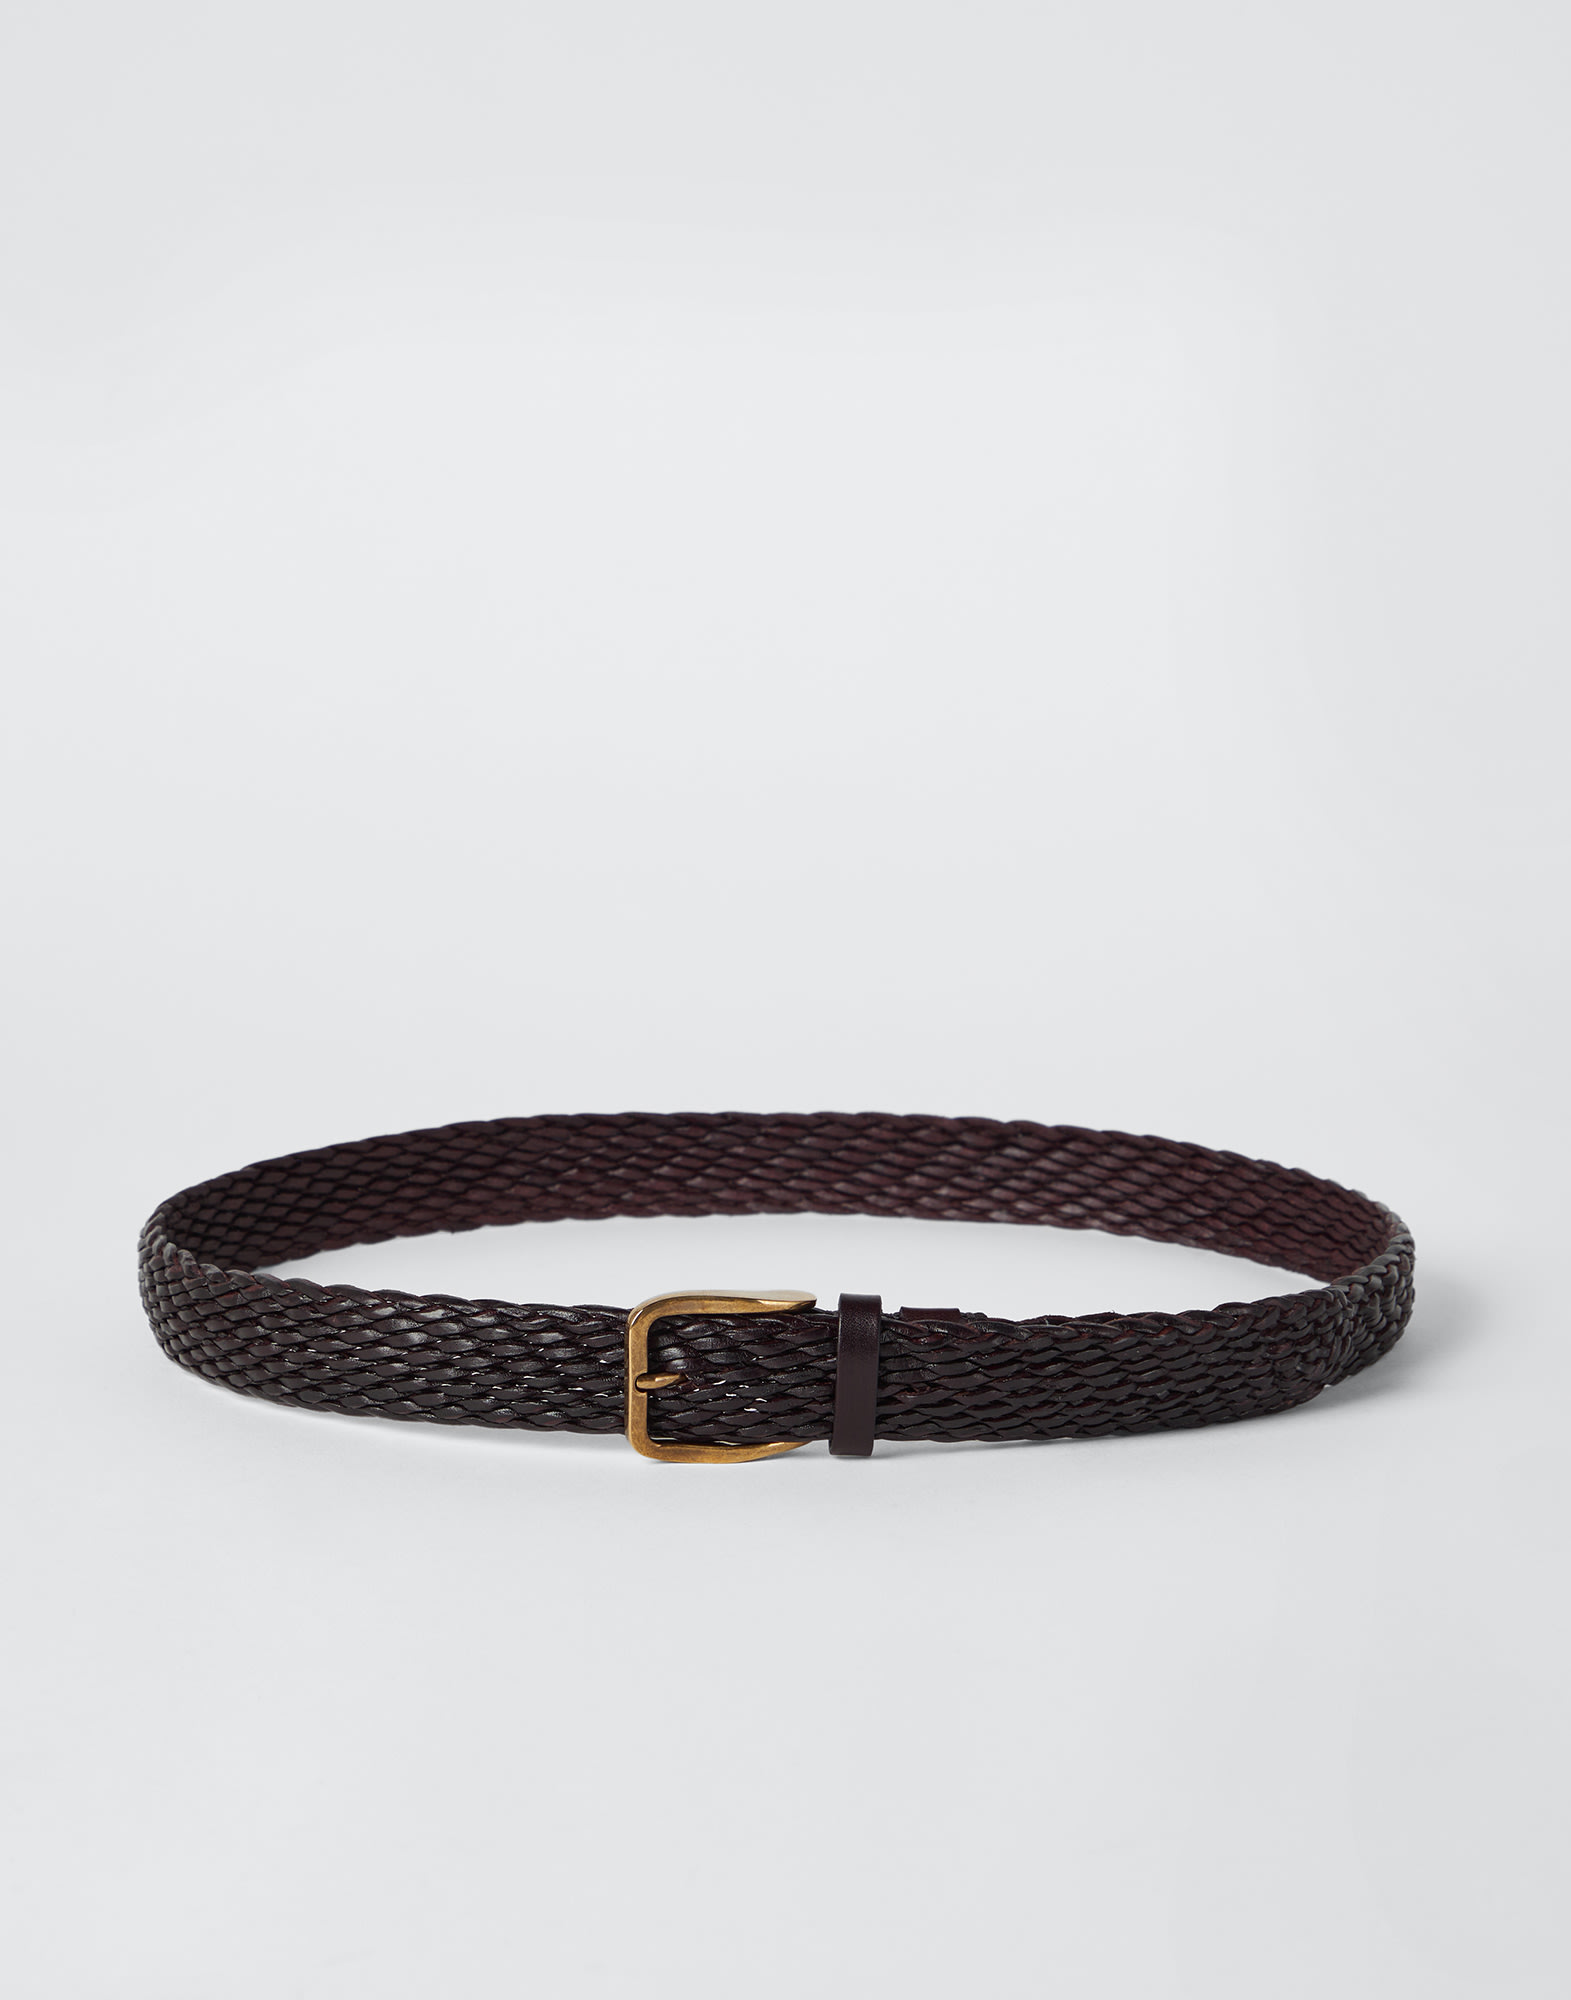 Calfskin braided belt